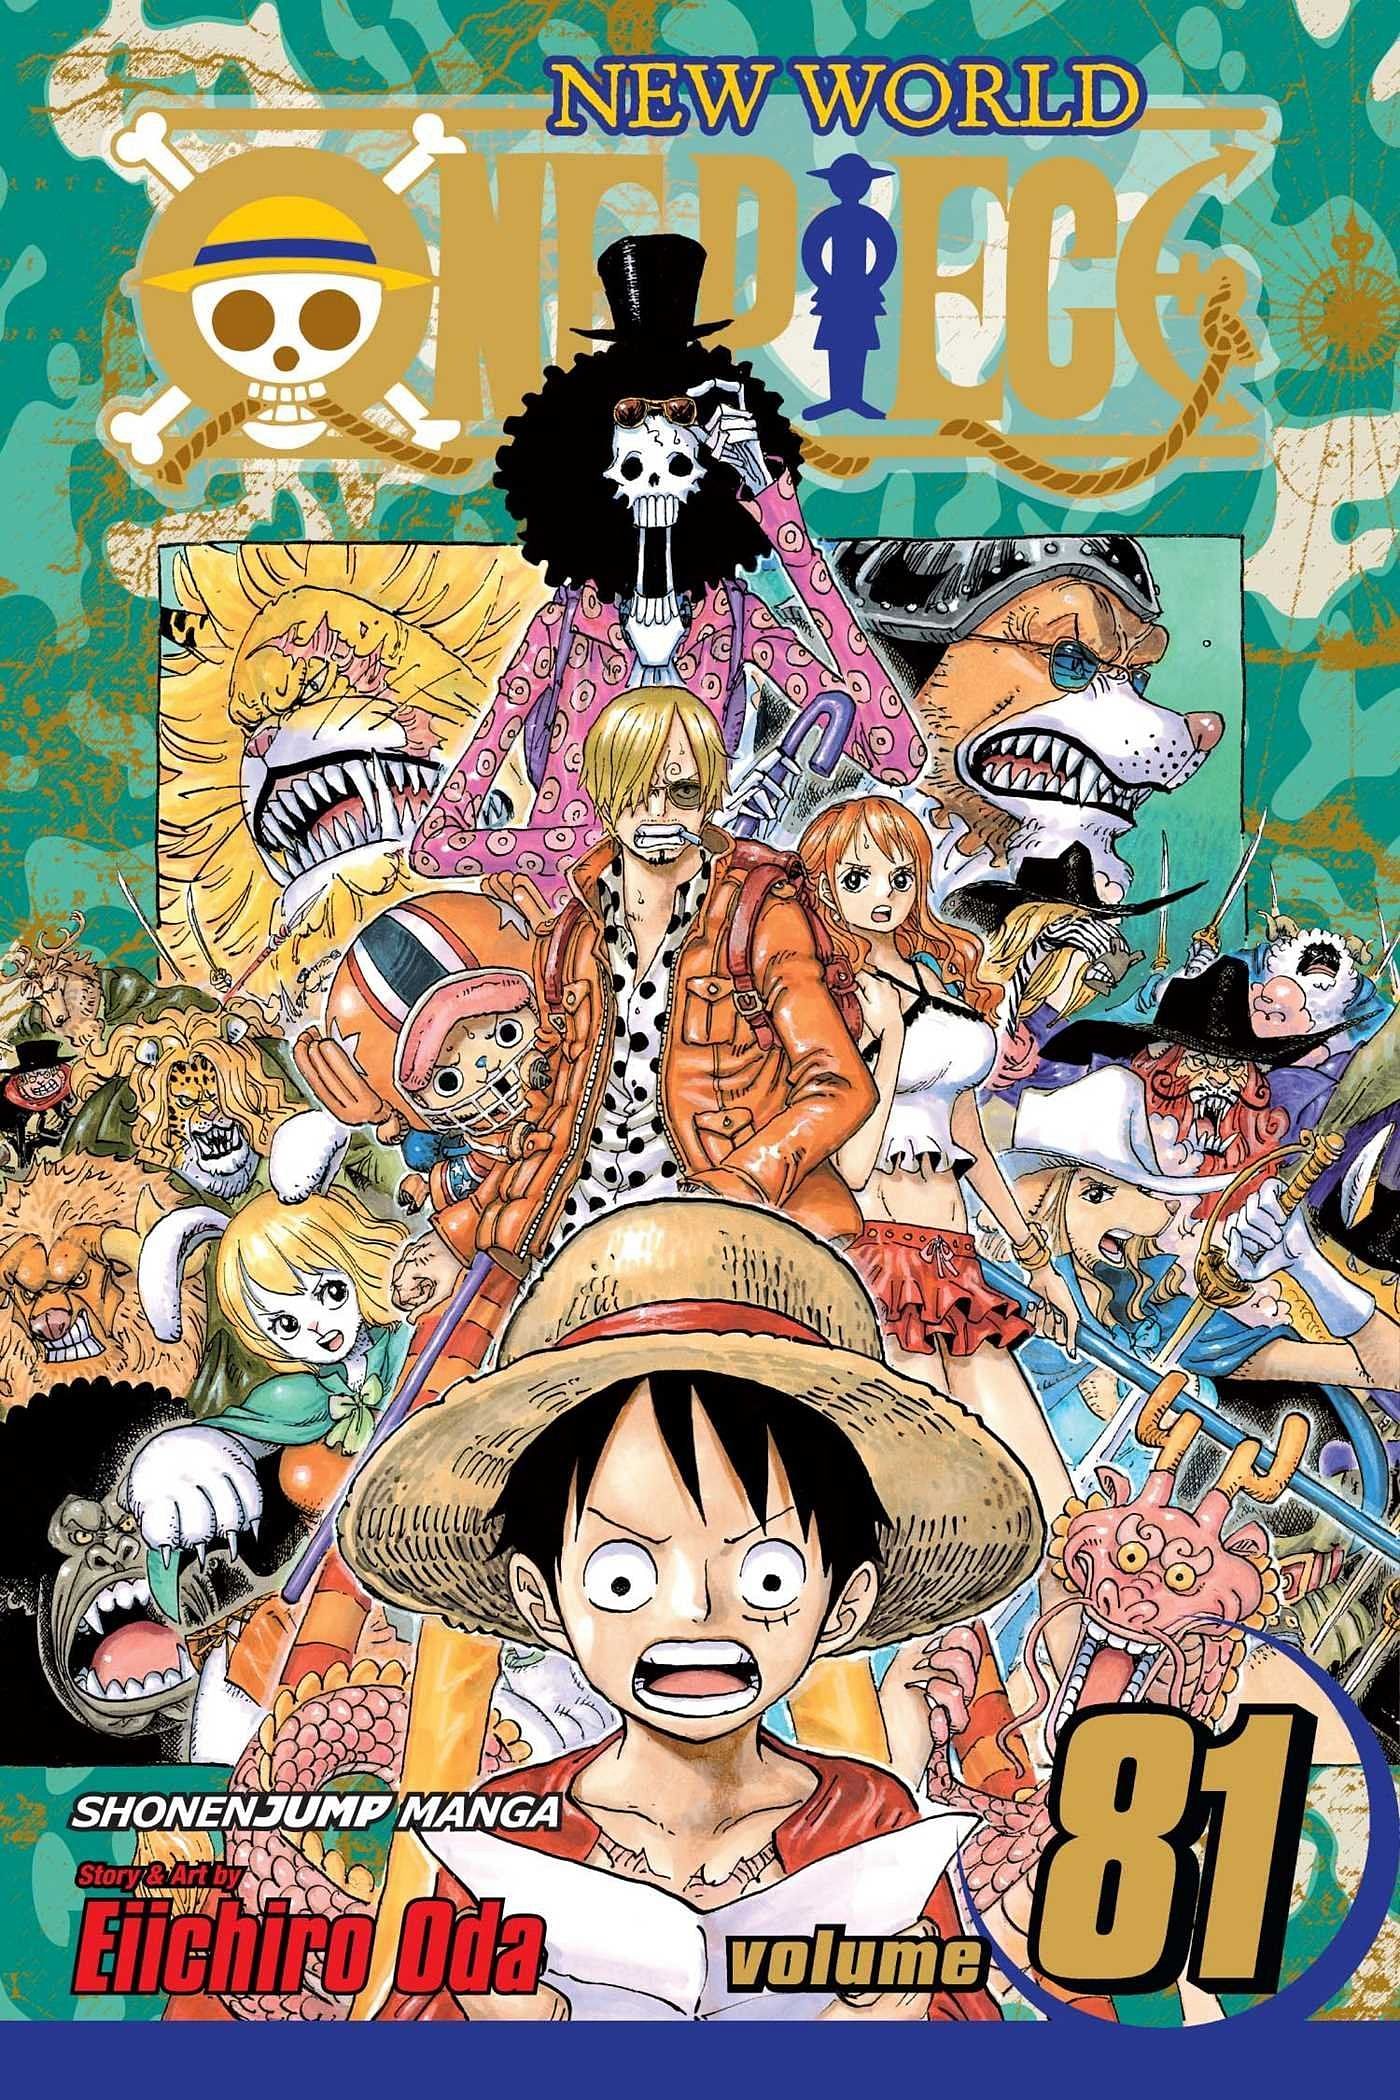 The cover art for One Piece Volume 81 (Image via Shueisha)